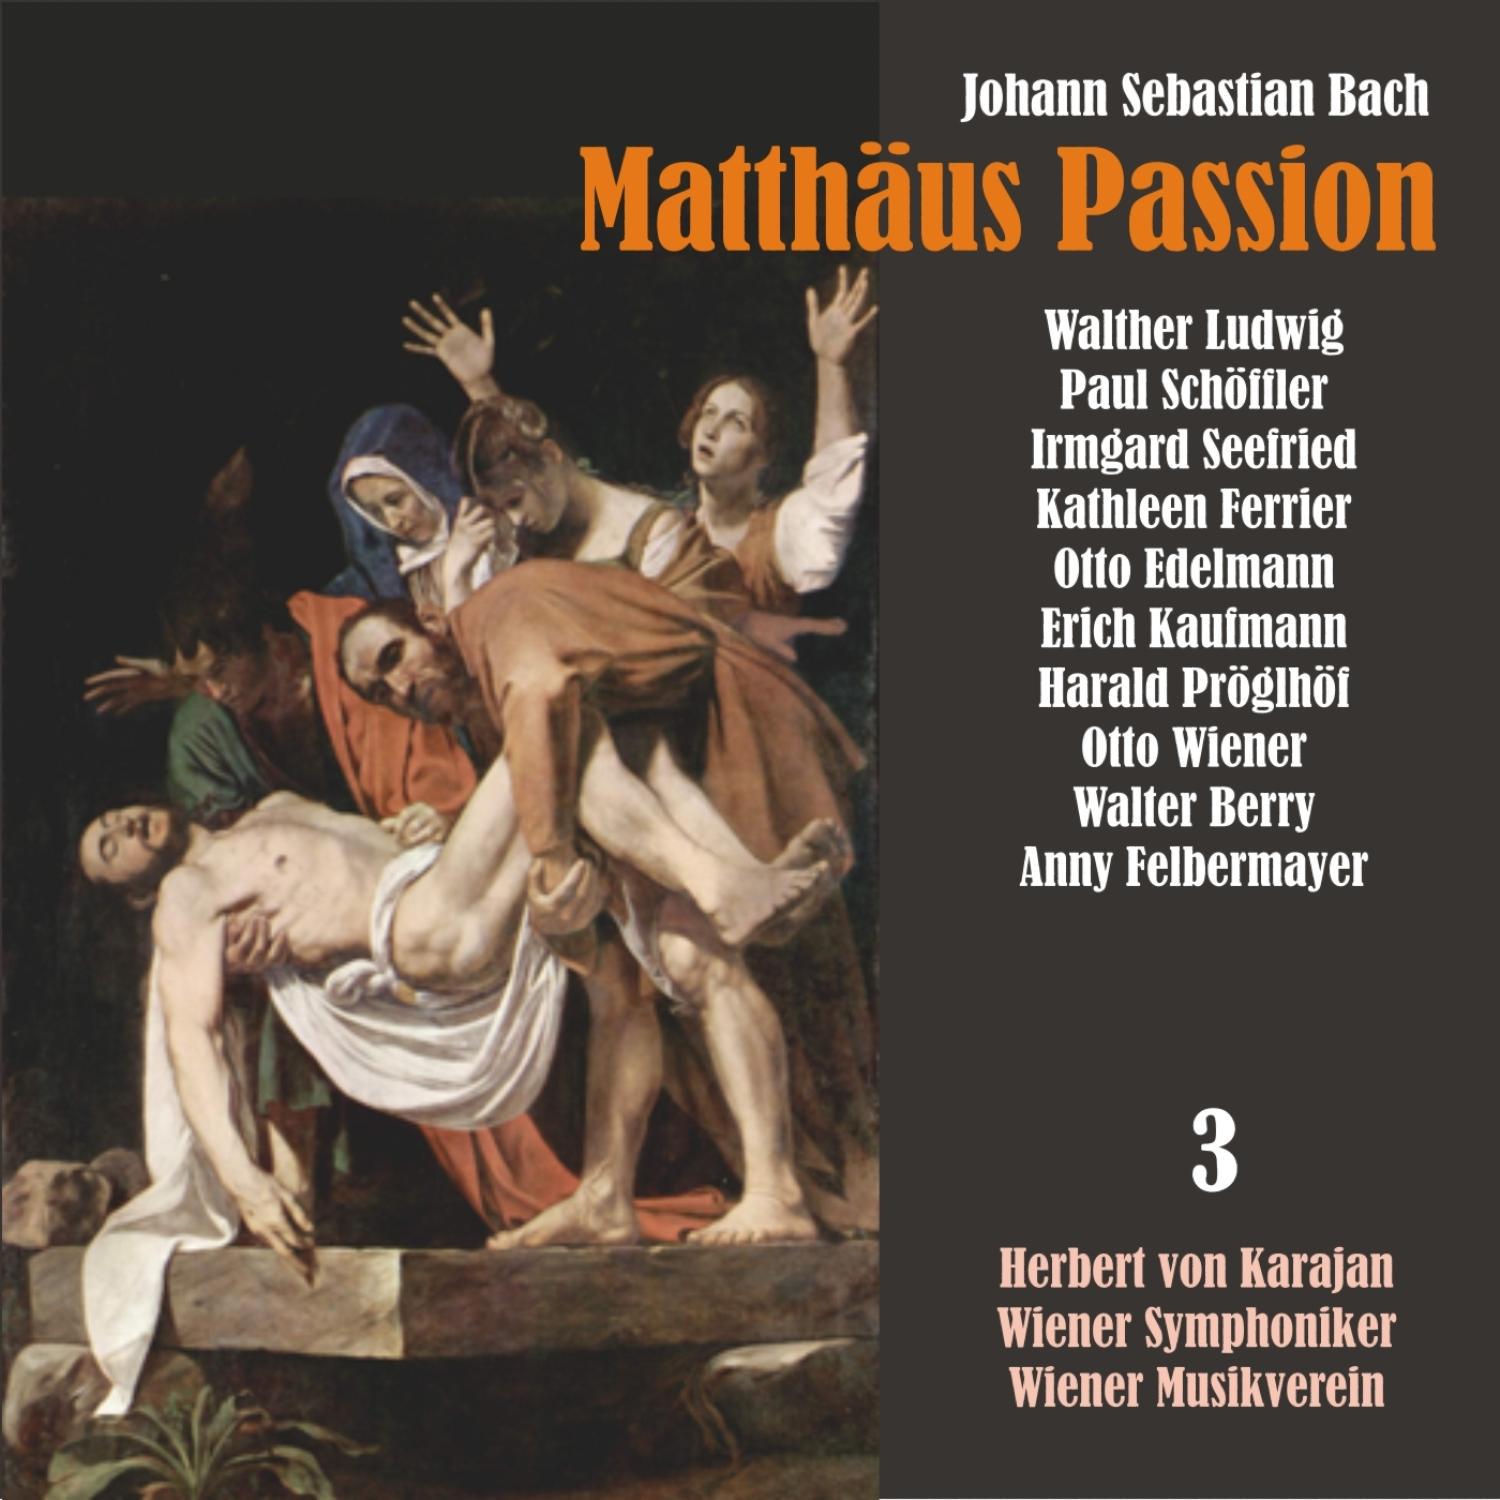 Matthäus Passion, BWV 244: "Sehet, Jesus hat die Hand"